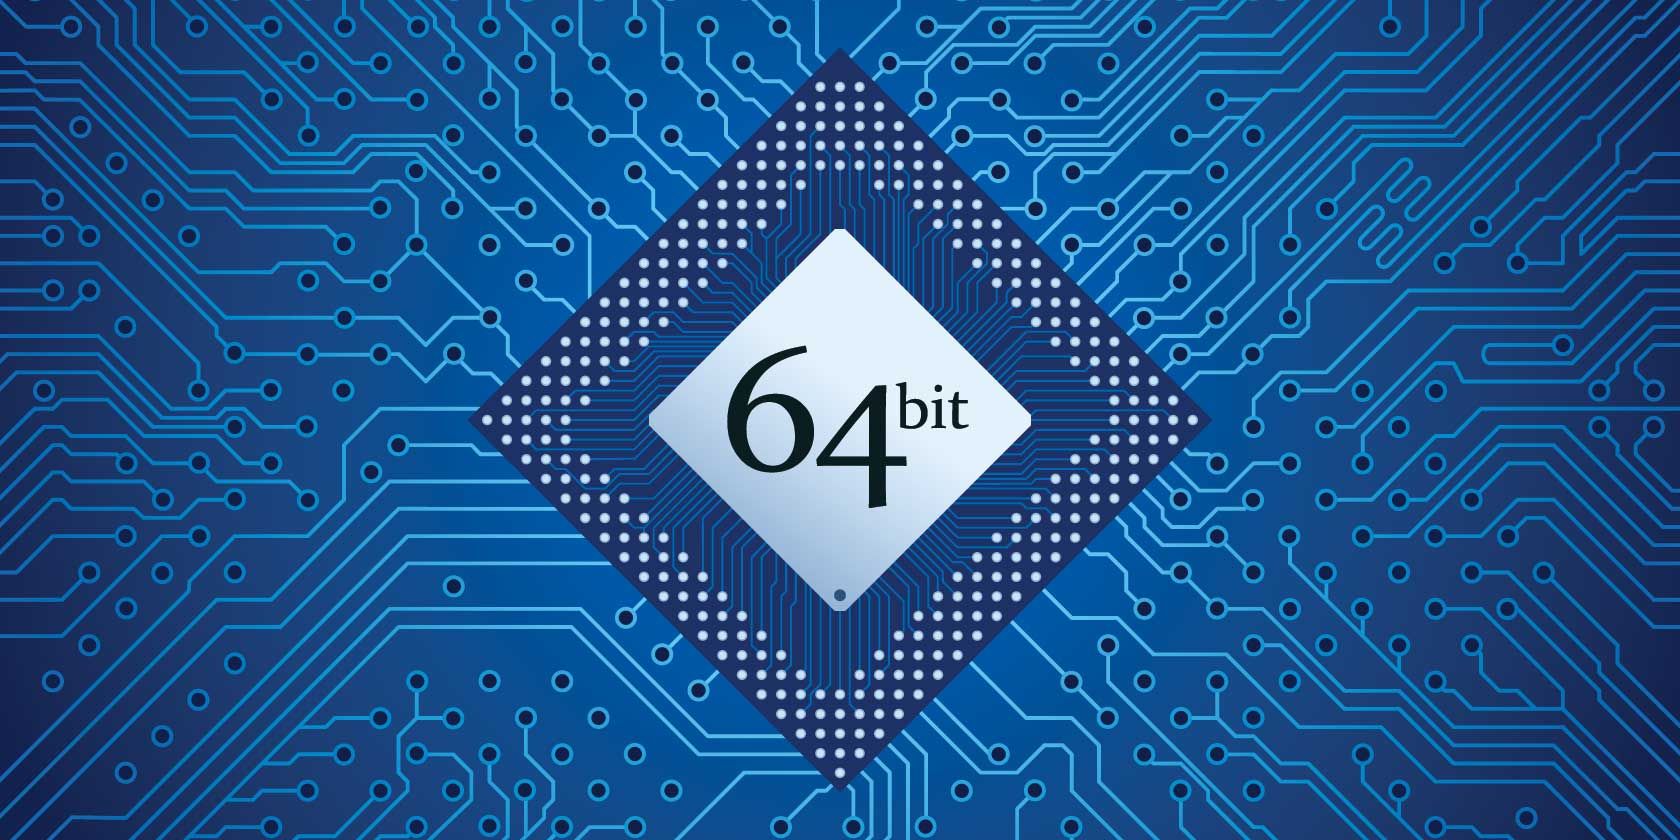 will matlab 64 bit install on 32 bit